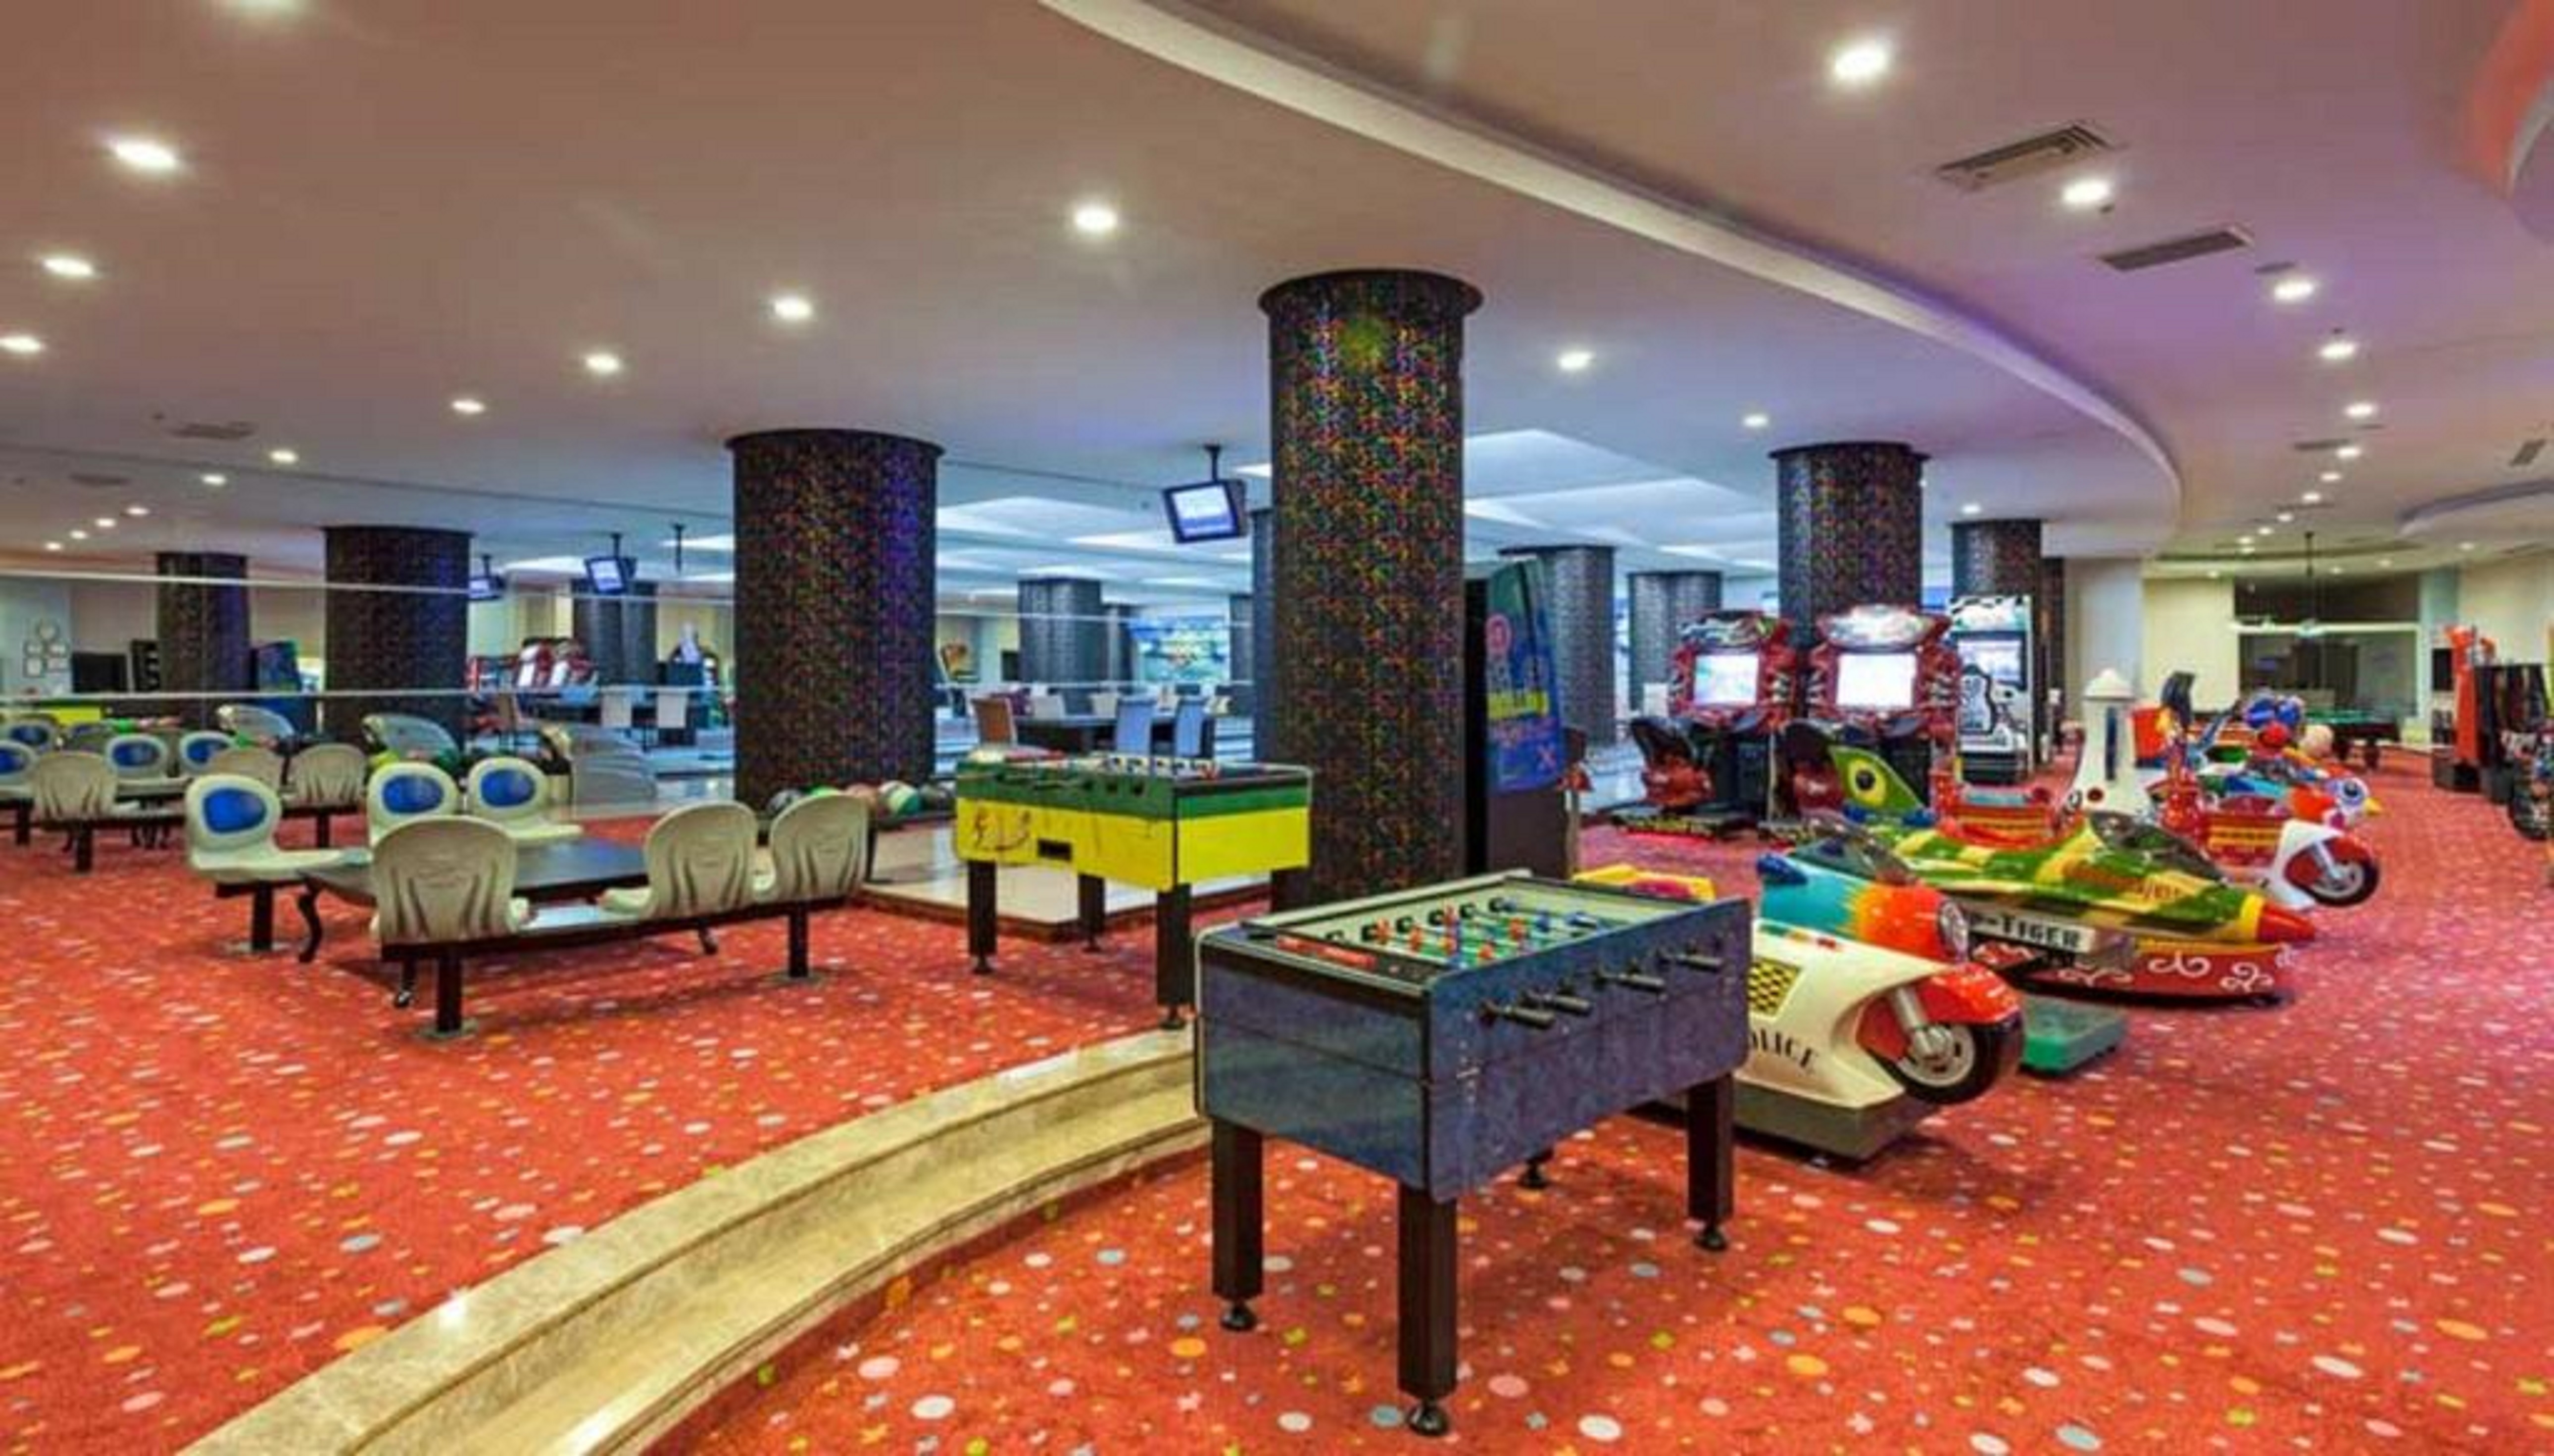 Amara Luxury Resort